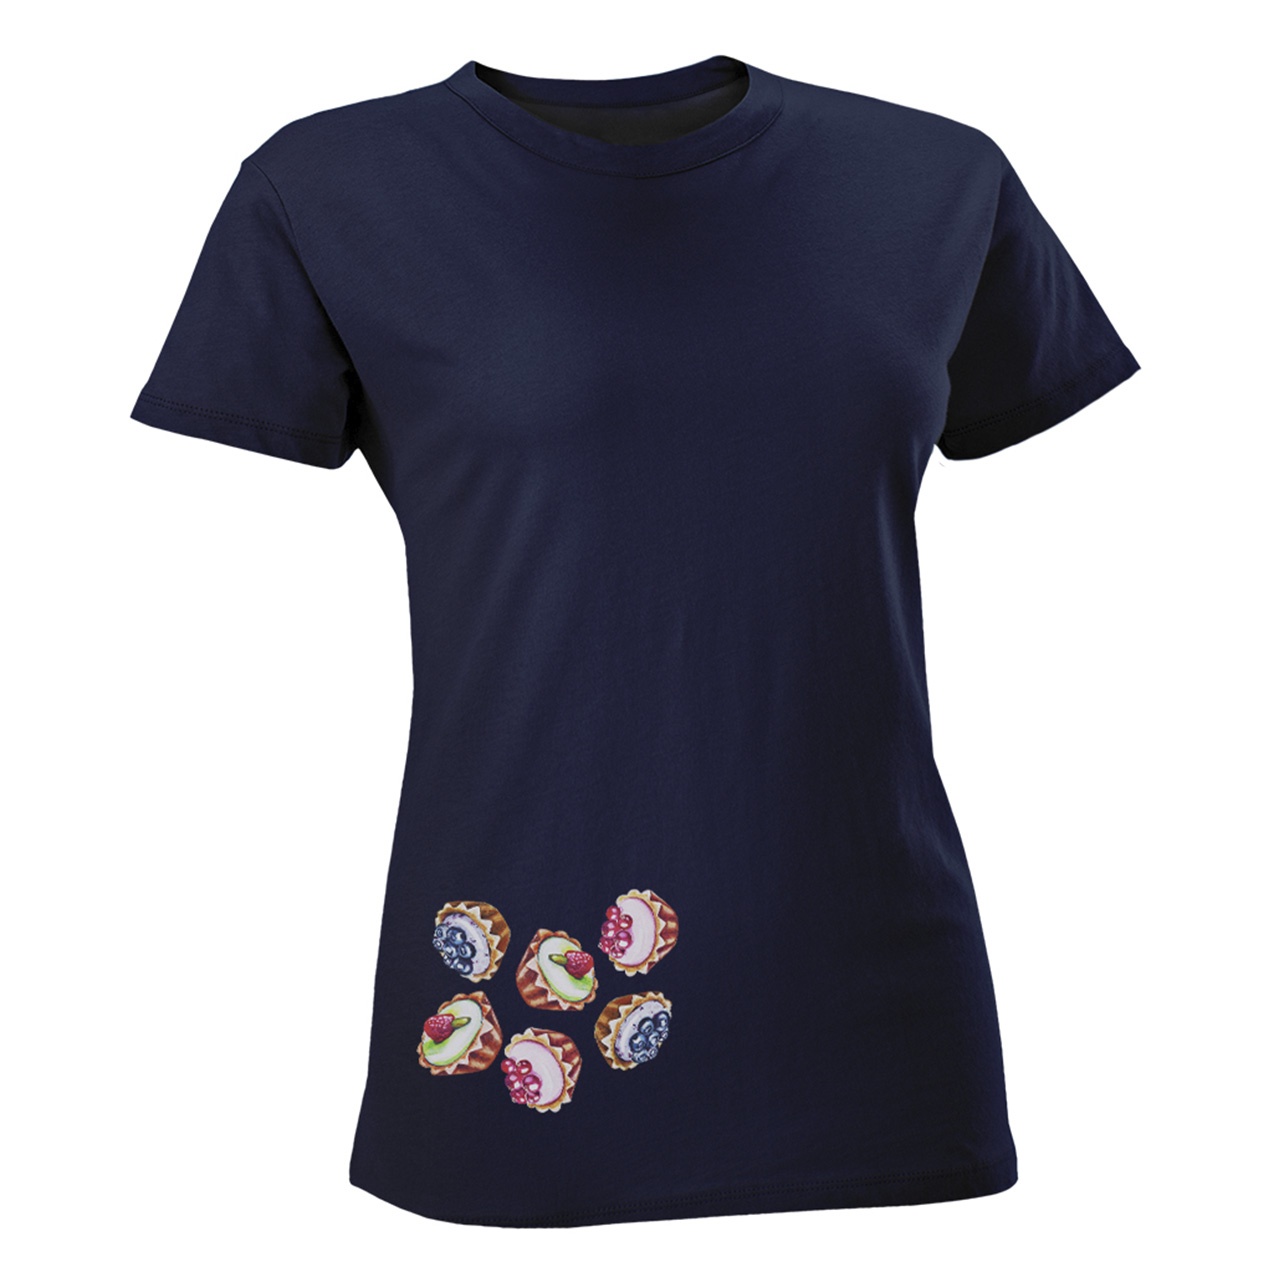 تی شرت زنانه مسترمانی طرح کاپ کیک کد 1171